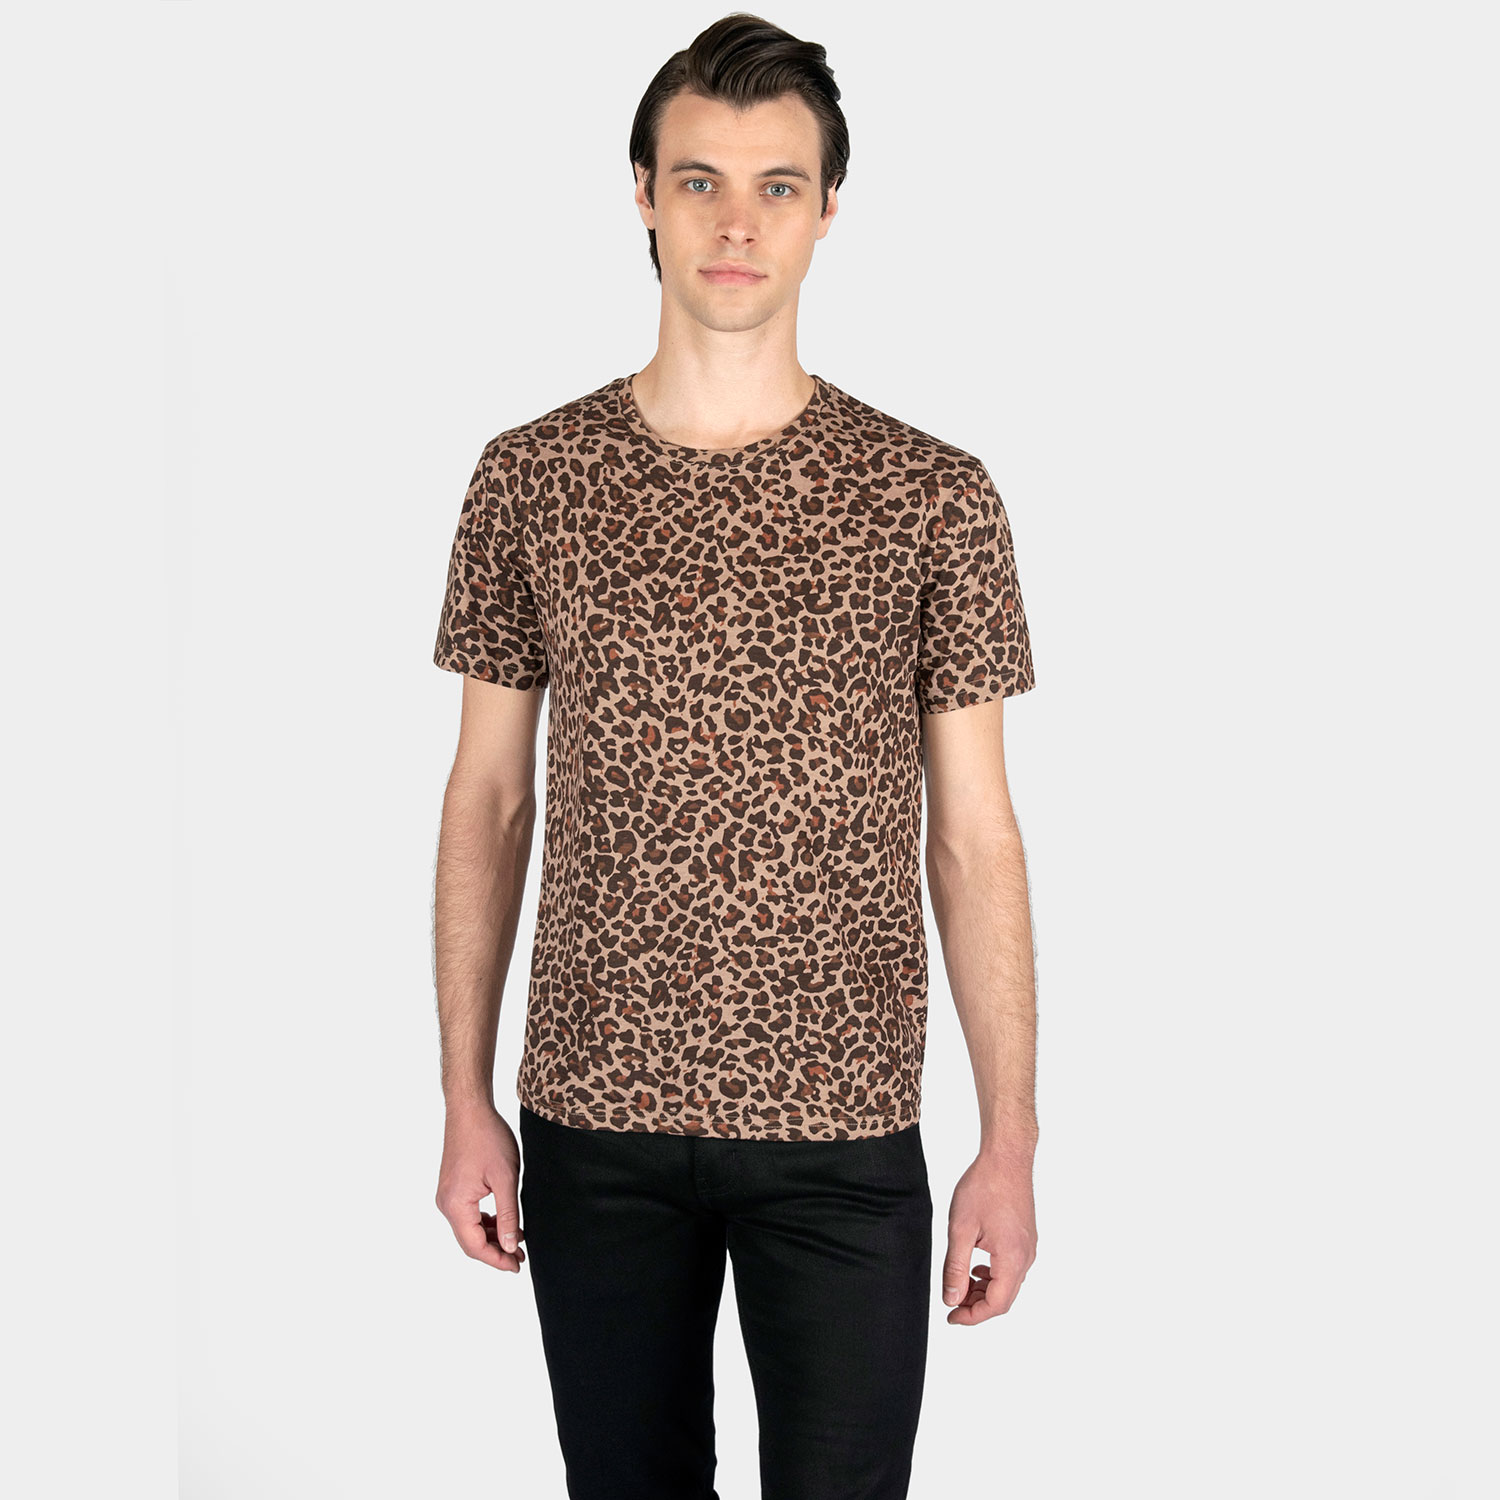 Jax - Leopard Print T-Shirt (Size XS, S, M, L, XL, 2XL, 3XL